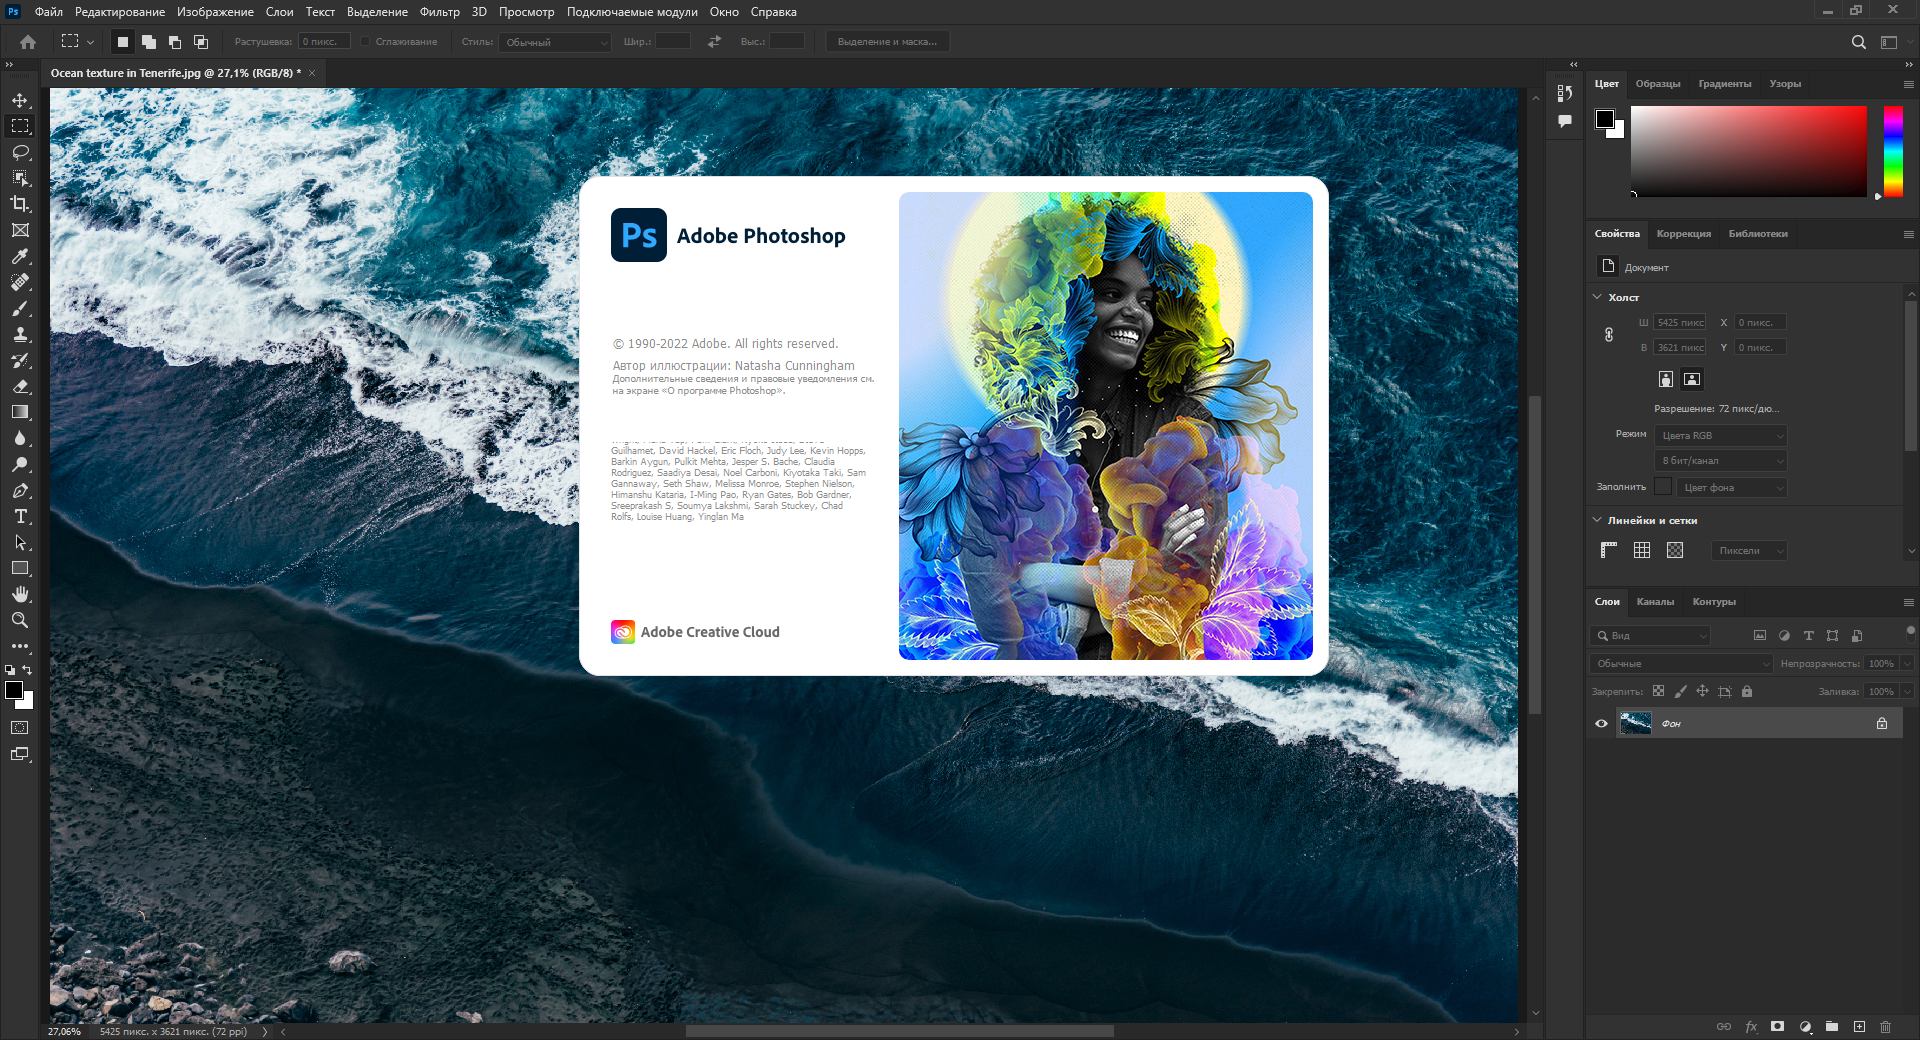 Adobe Photoshop 2022 23.3.1.426 (x64) RePack by SanLex [Multi/Ru]